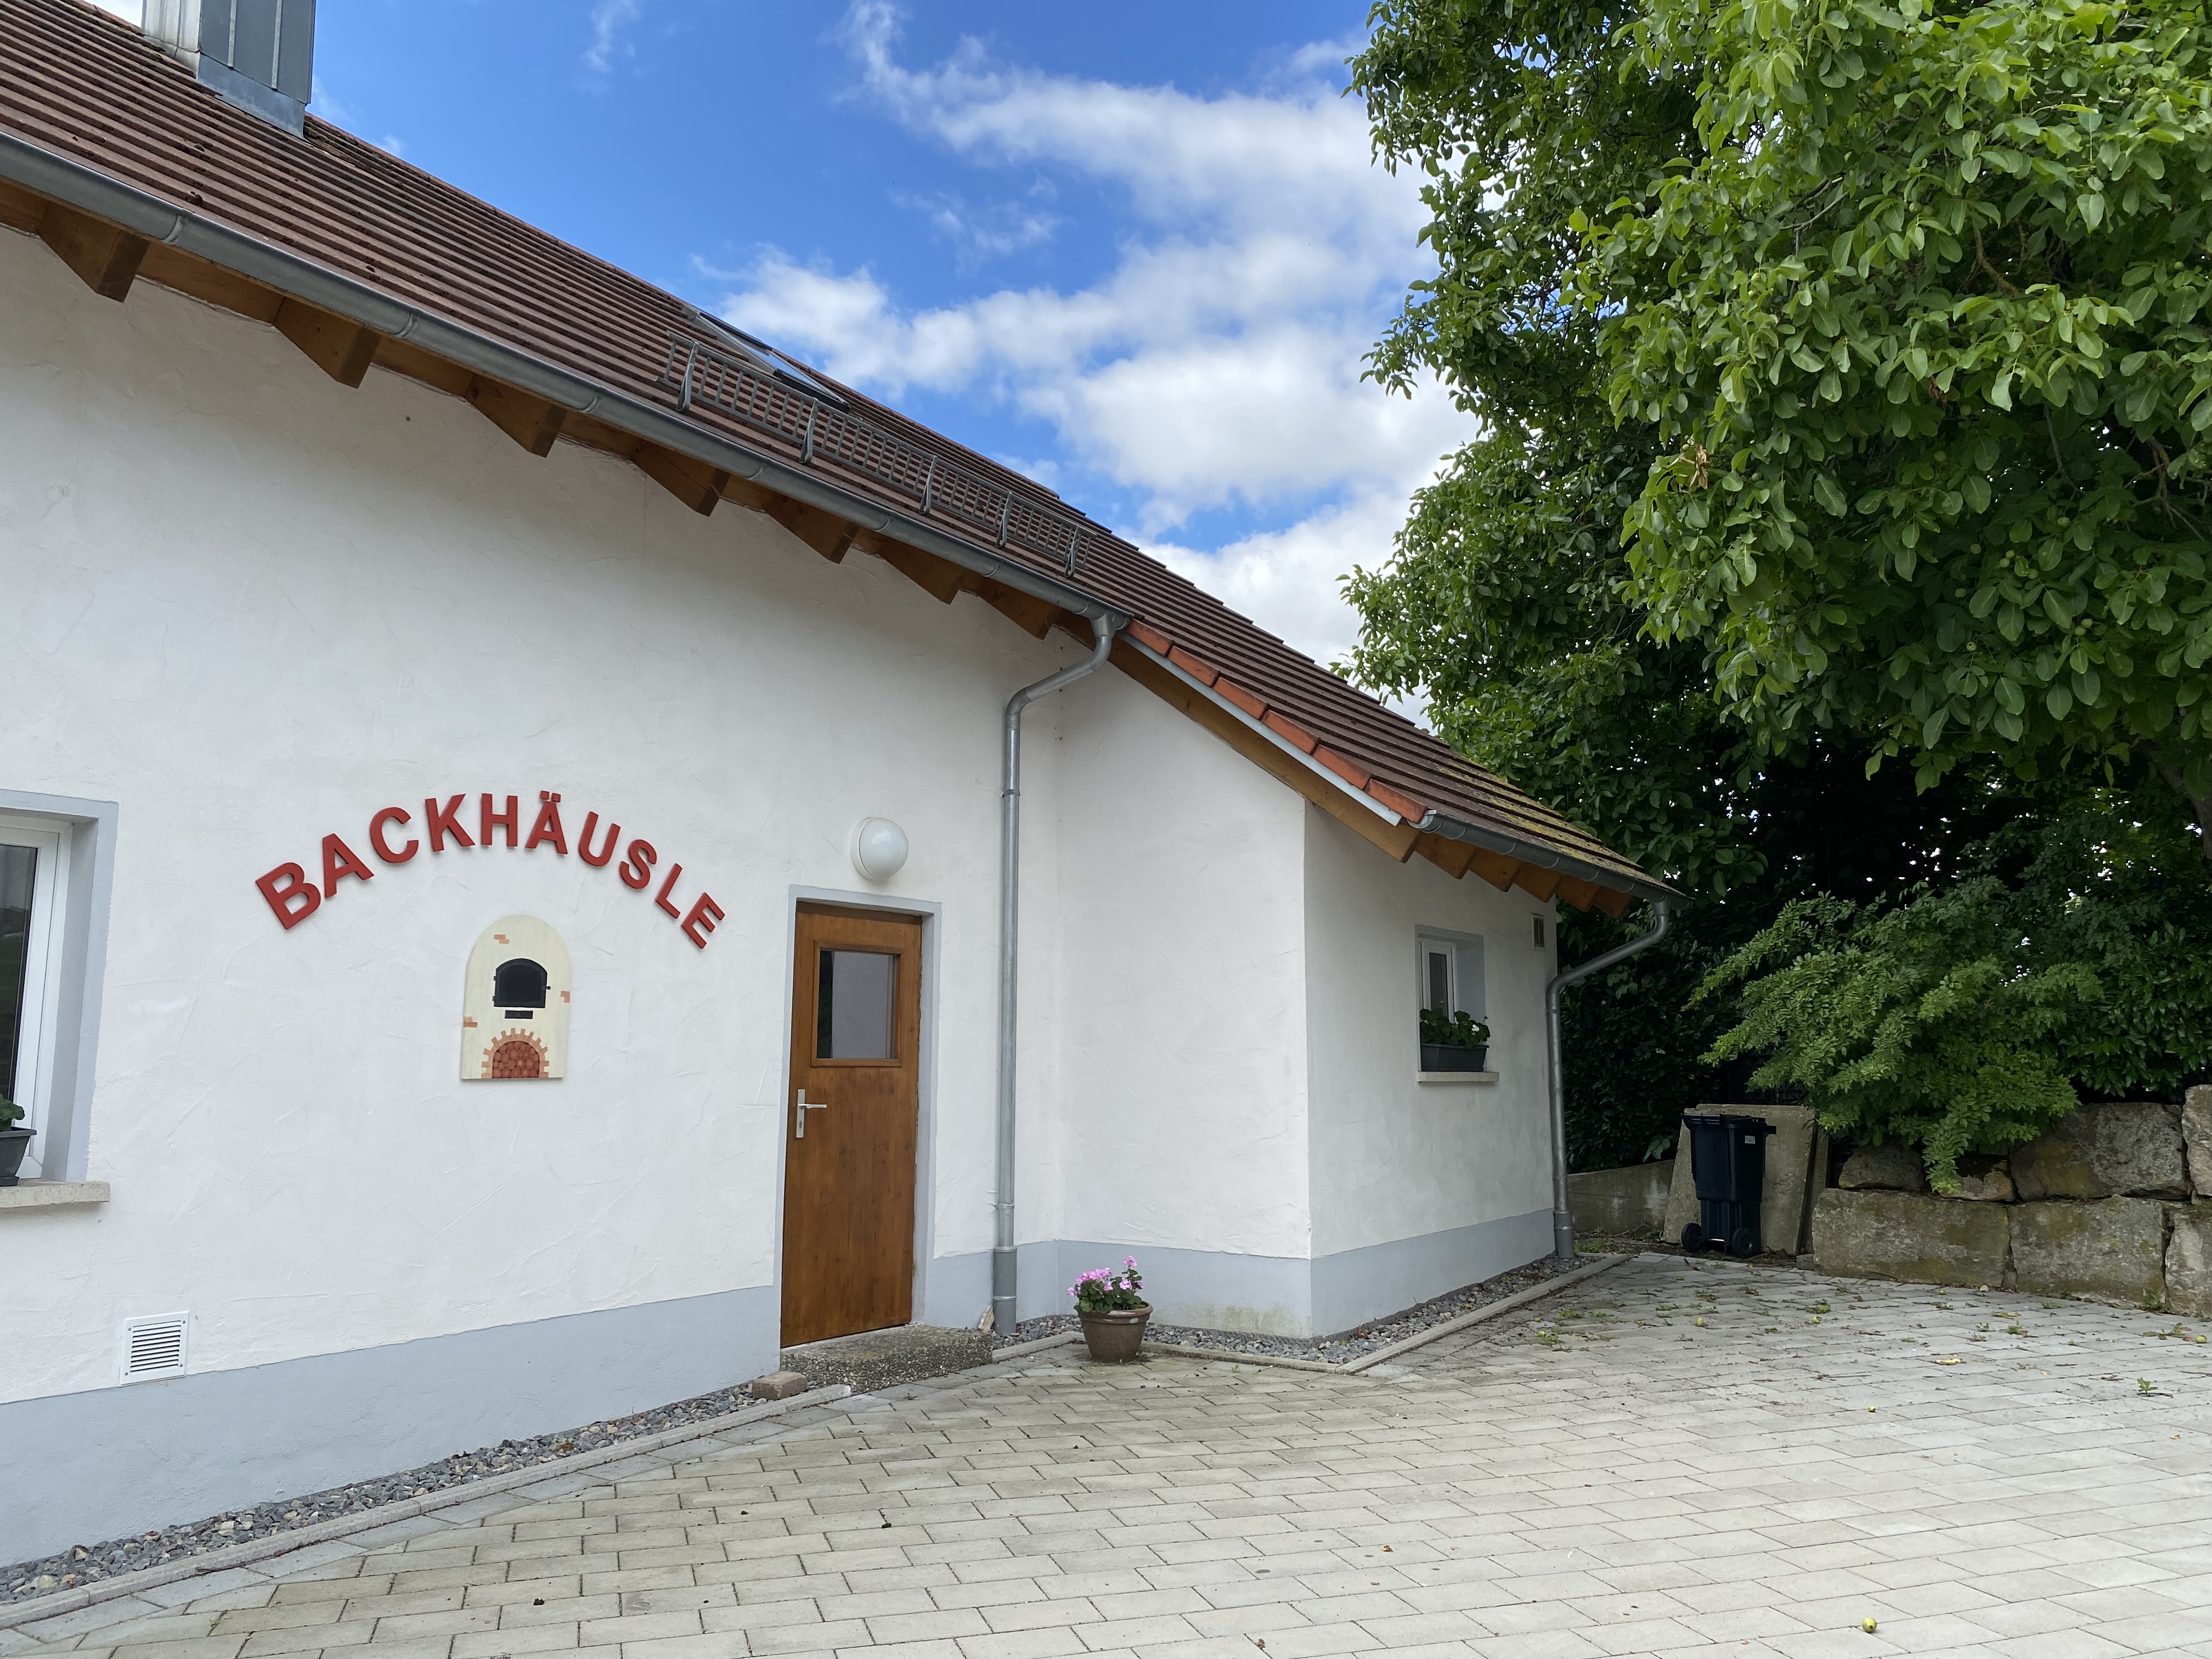  "Unser Backhäusle" der evangelischen Kirchengemeinde Börtlingen-Birenbach 